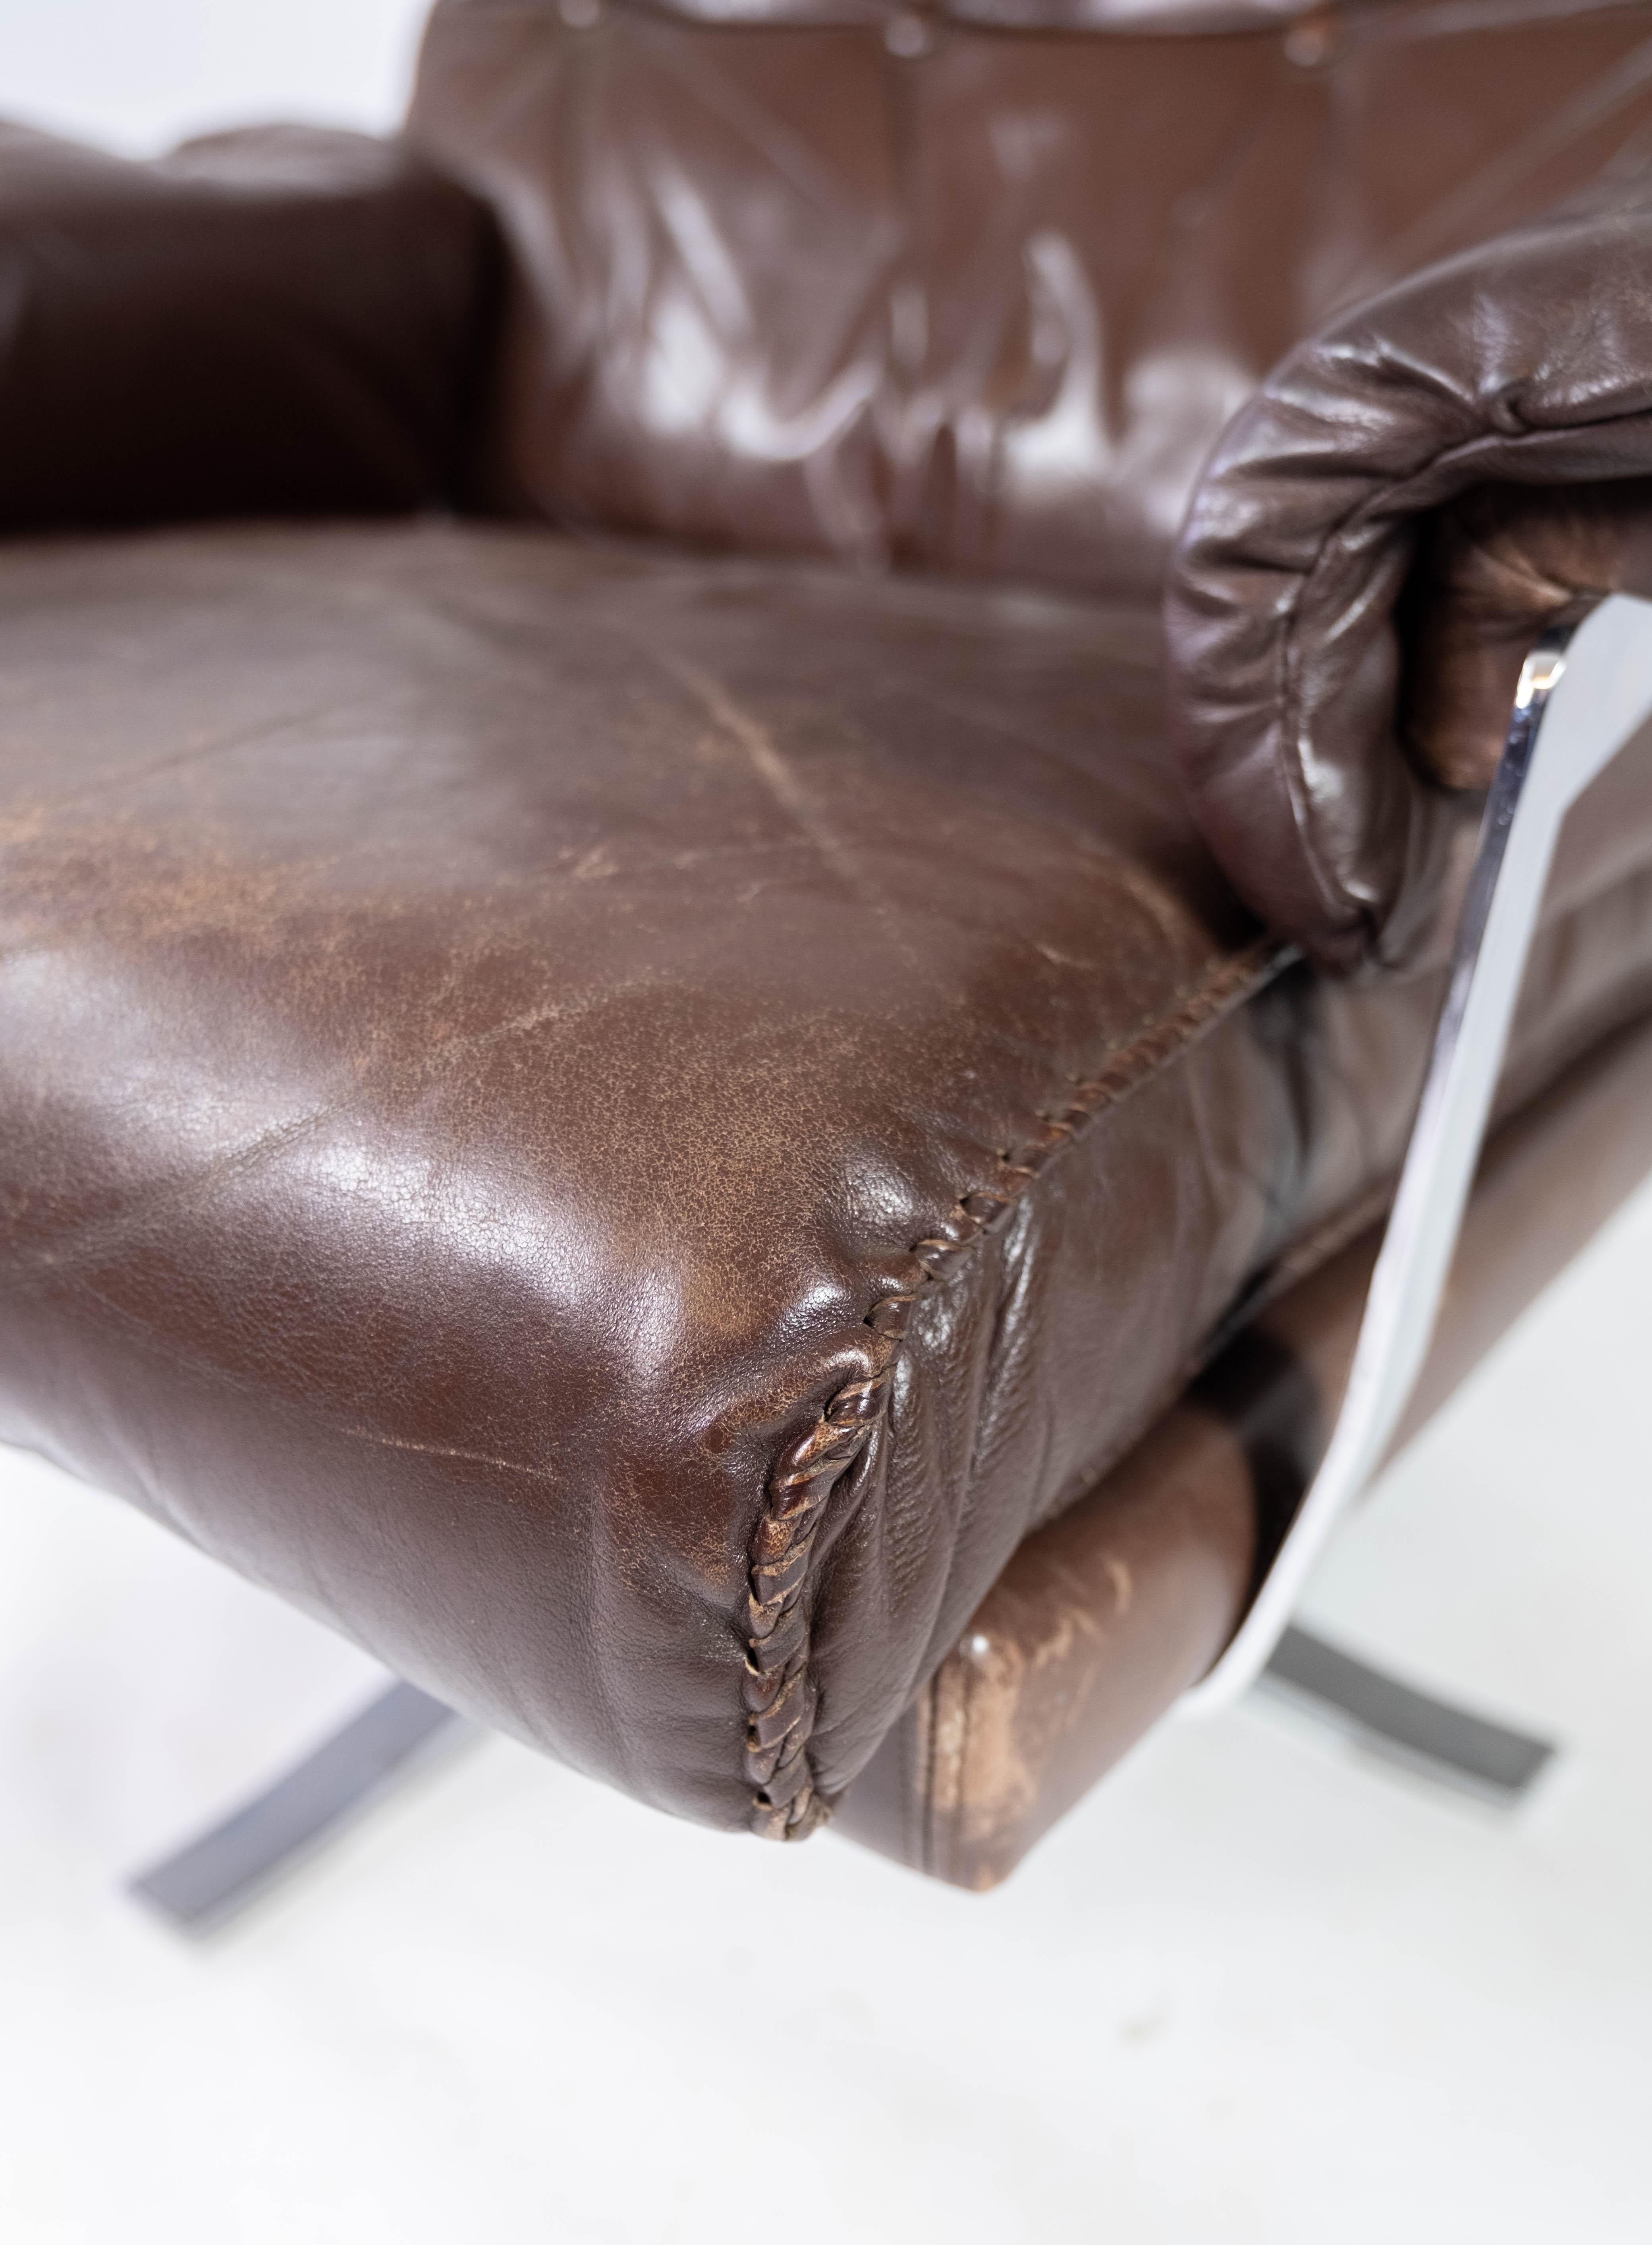 Dieser Sessel aus patiniertem braunem Leder und Metallgestell ist ein zeitloses Möbelstück, das von dem bekannten schwedischen Designer Arne Norell entworfen und von Vatne Møbler in den 1970er Jahren hergestellt wurde.

Arne Norell war bekannt für